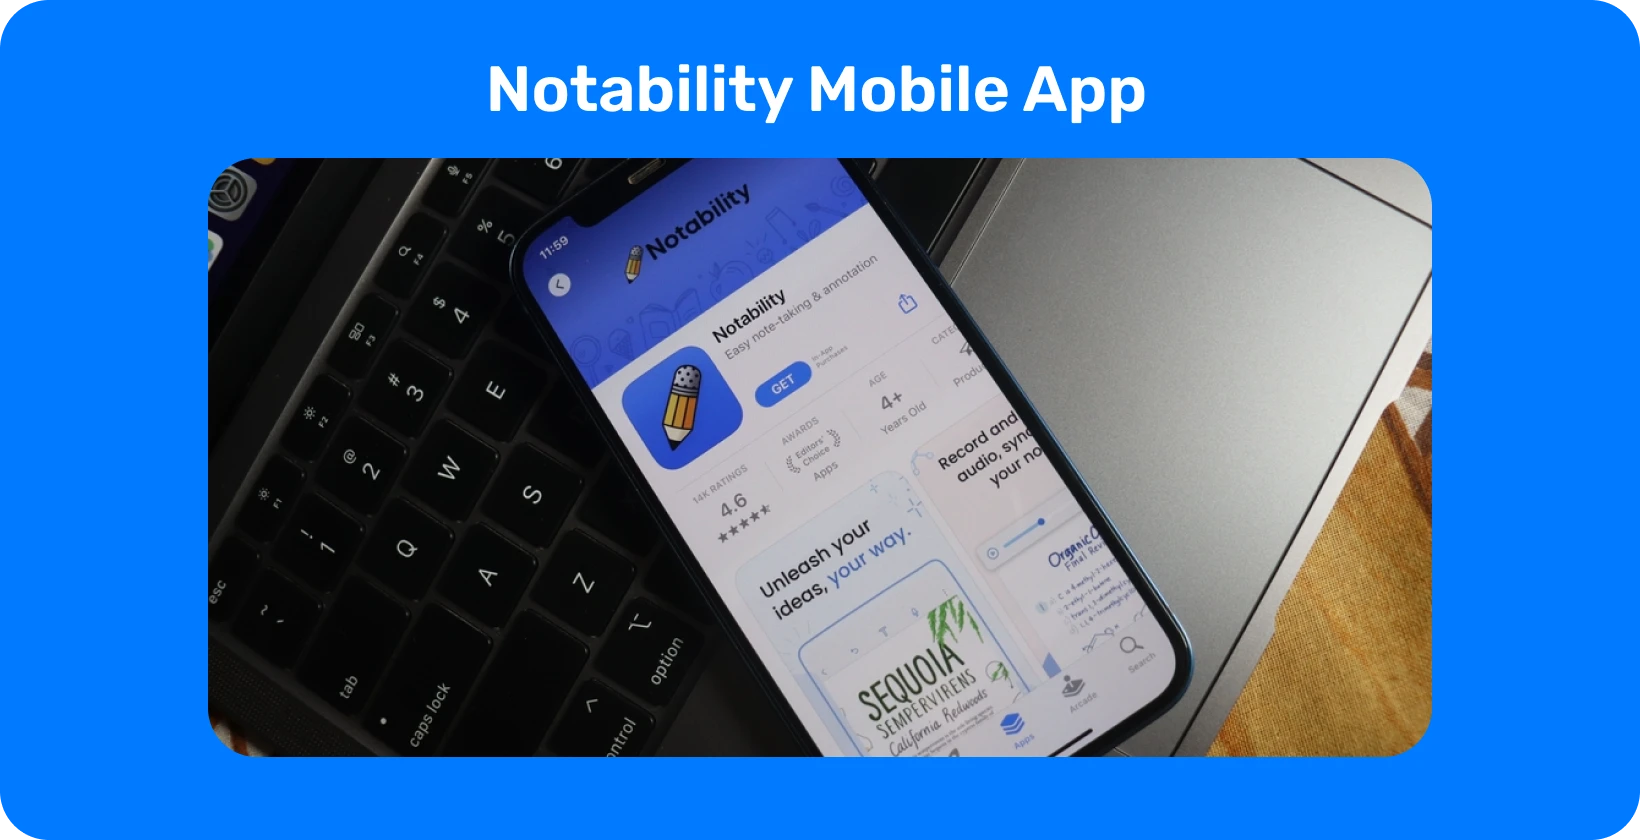 Приложение Notability на экране смартфона с функцией транскрипции, демонстрирующее возможности преобразования аудио в текст.